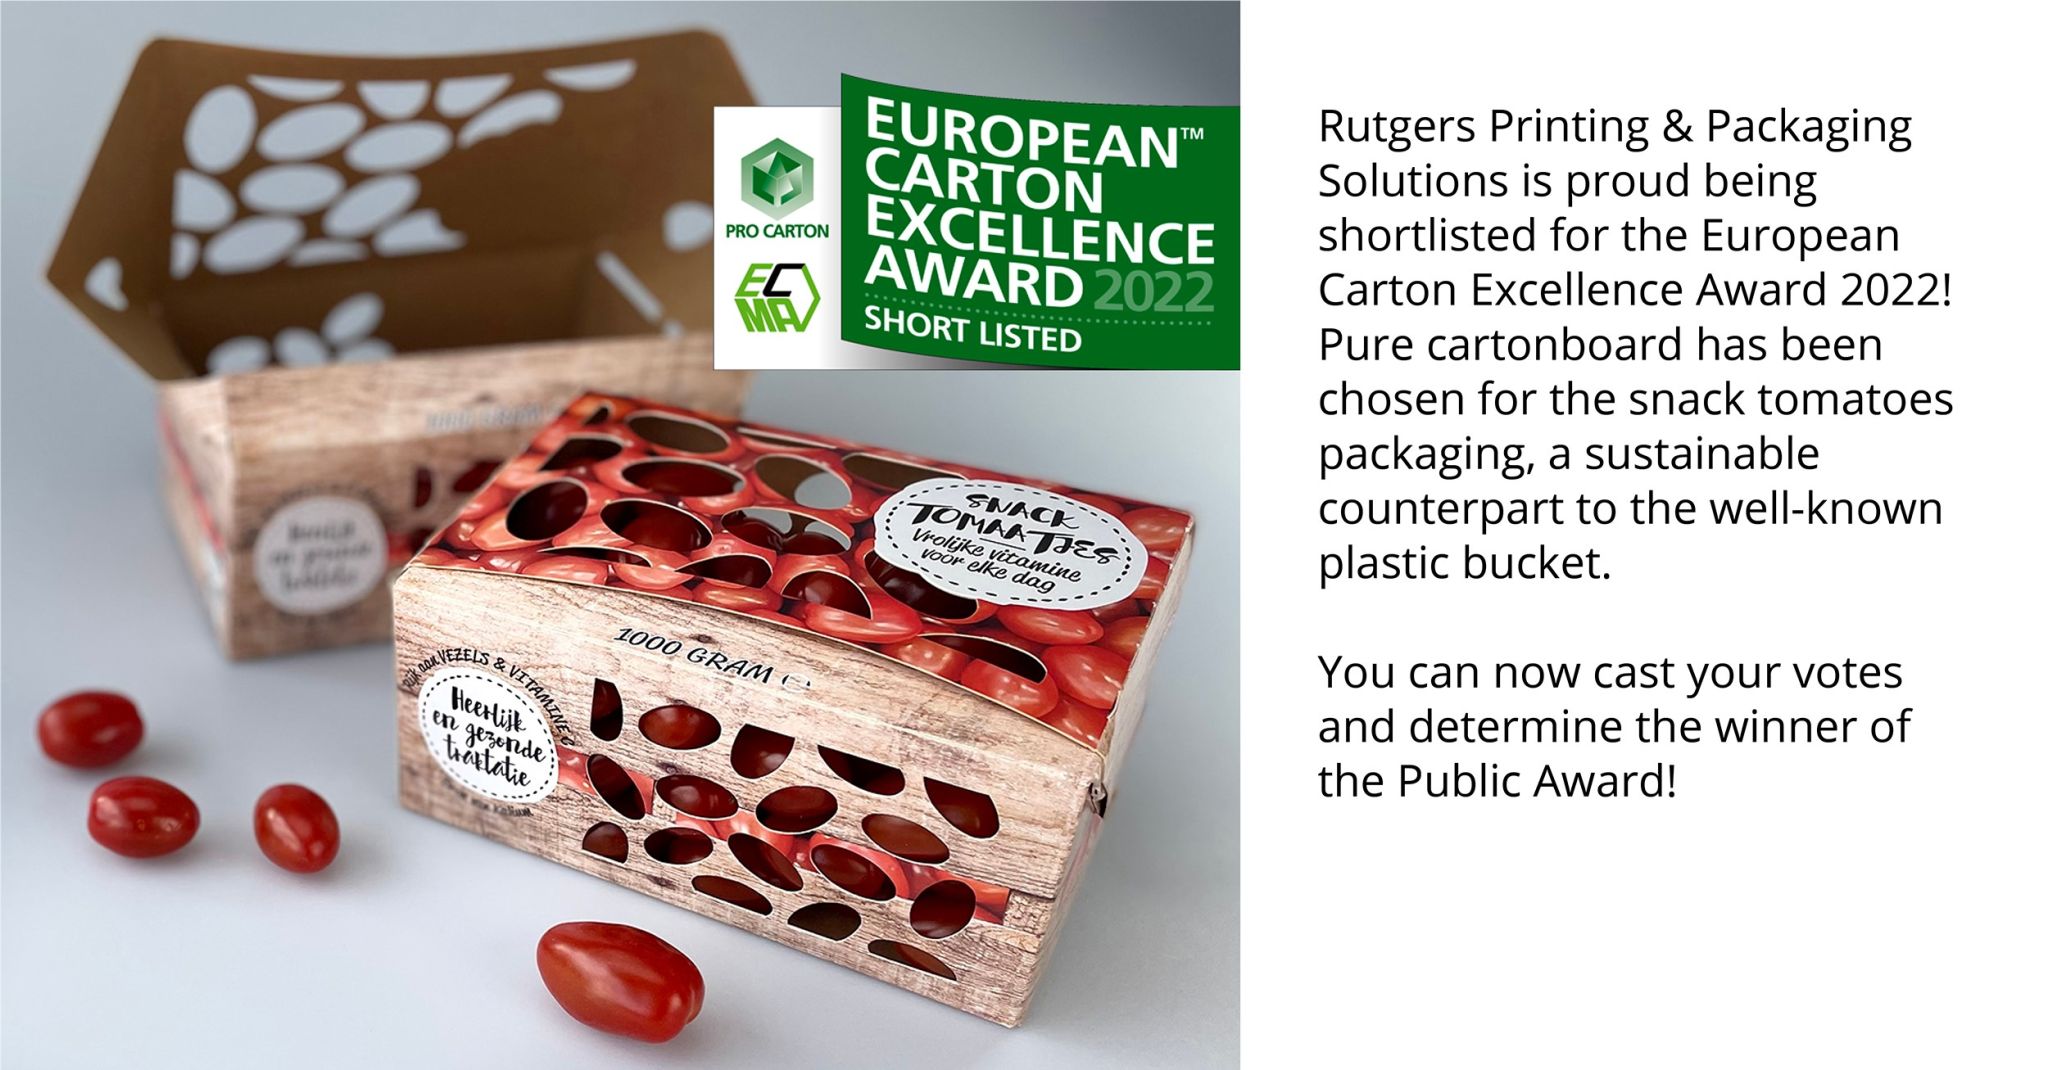 European Carton Excellence Award 2022